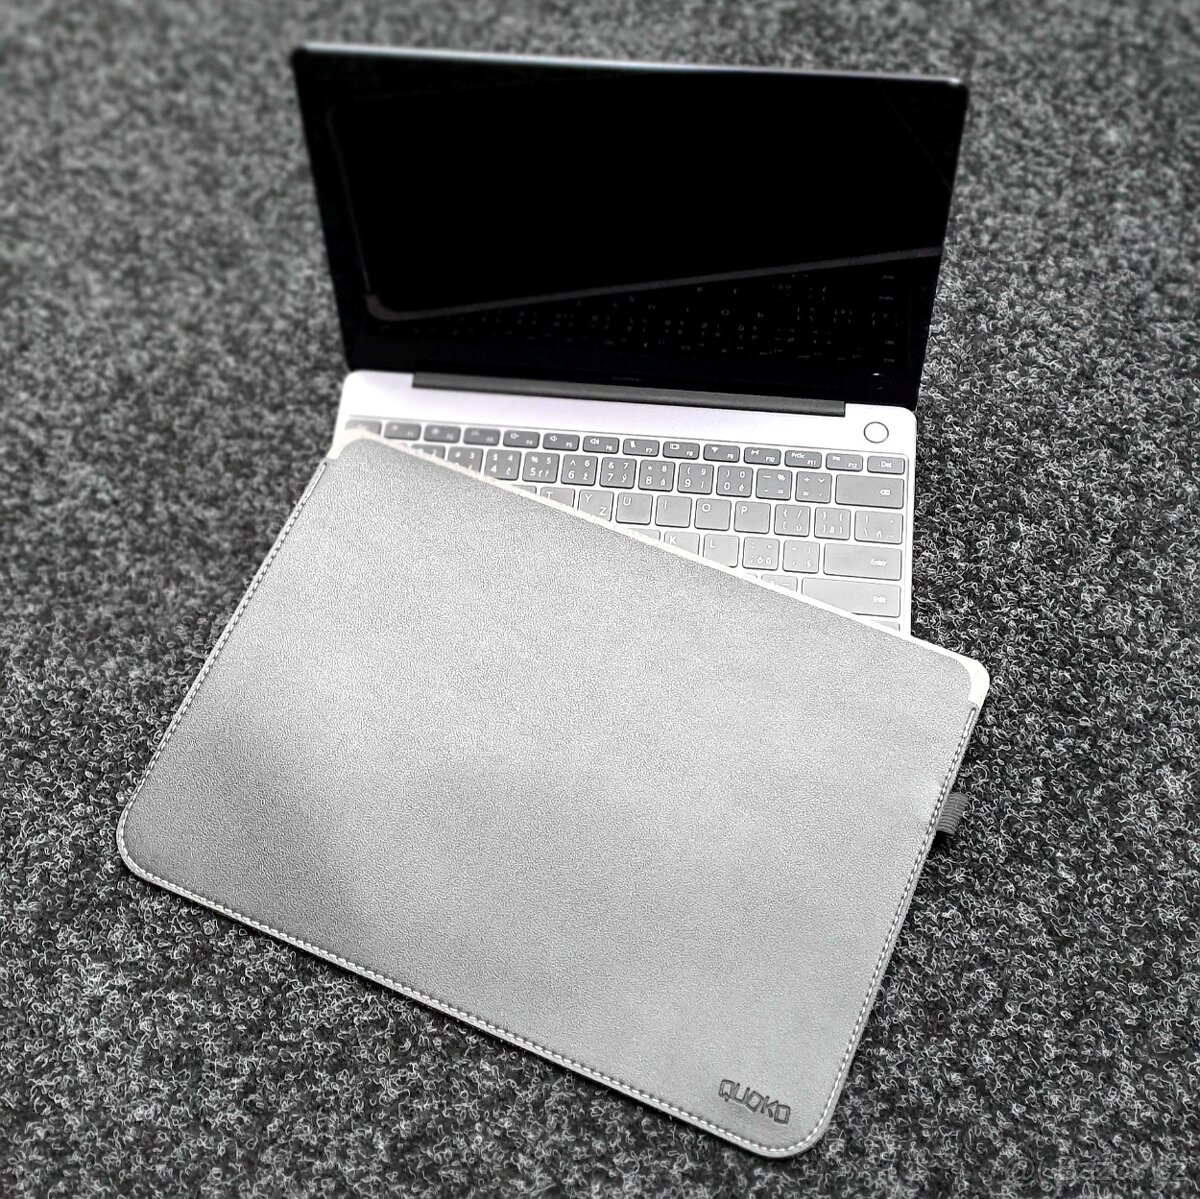 Pouzdro pro ultrabook, notebook nebo tablet z černé koženky